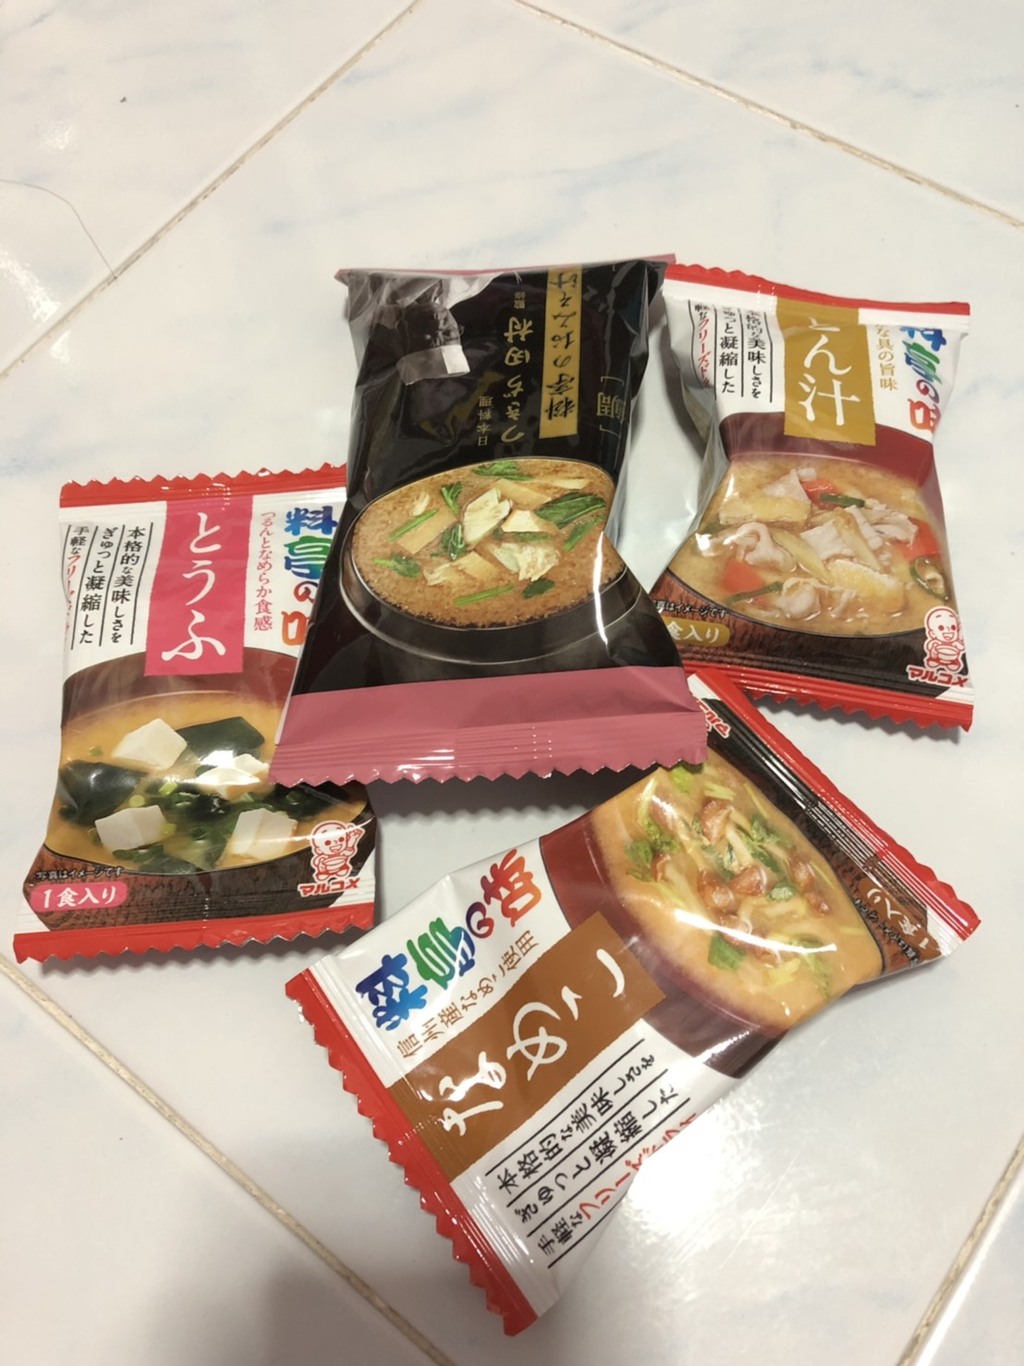 Marukome Freeze Dried Miso Soup ซุปมิโซะผงแบบก้อนสำเร็จรูป รีวิว